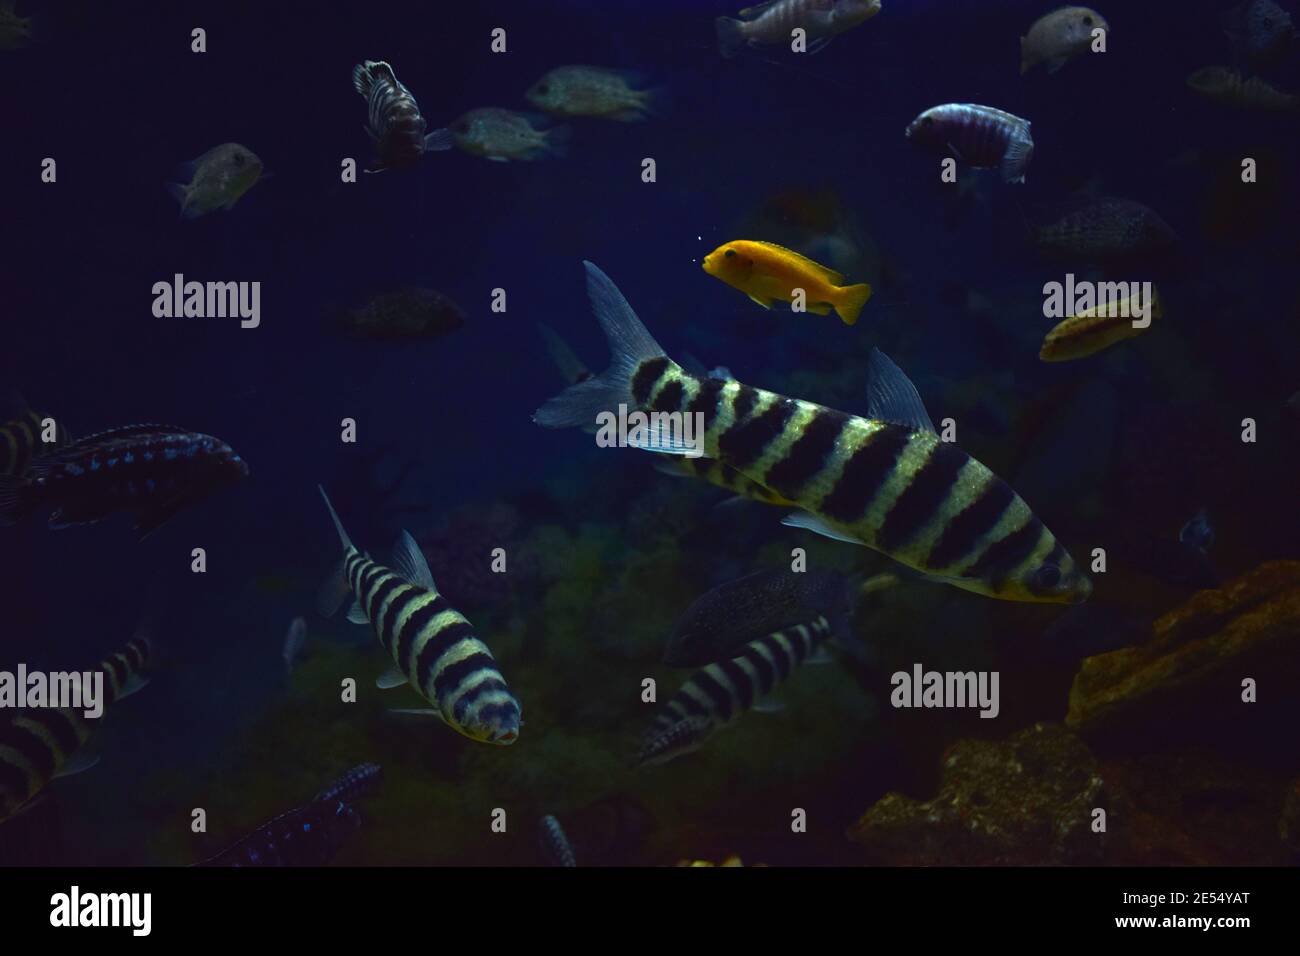 A banded Leporinus. Leporinus fasciatus underwater view. Aquarium fish. Stock Photo